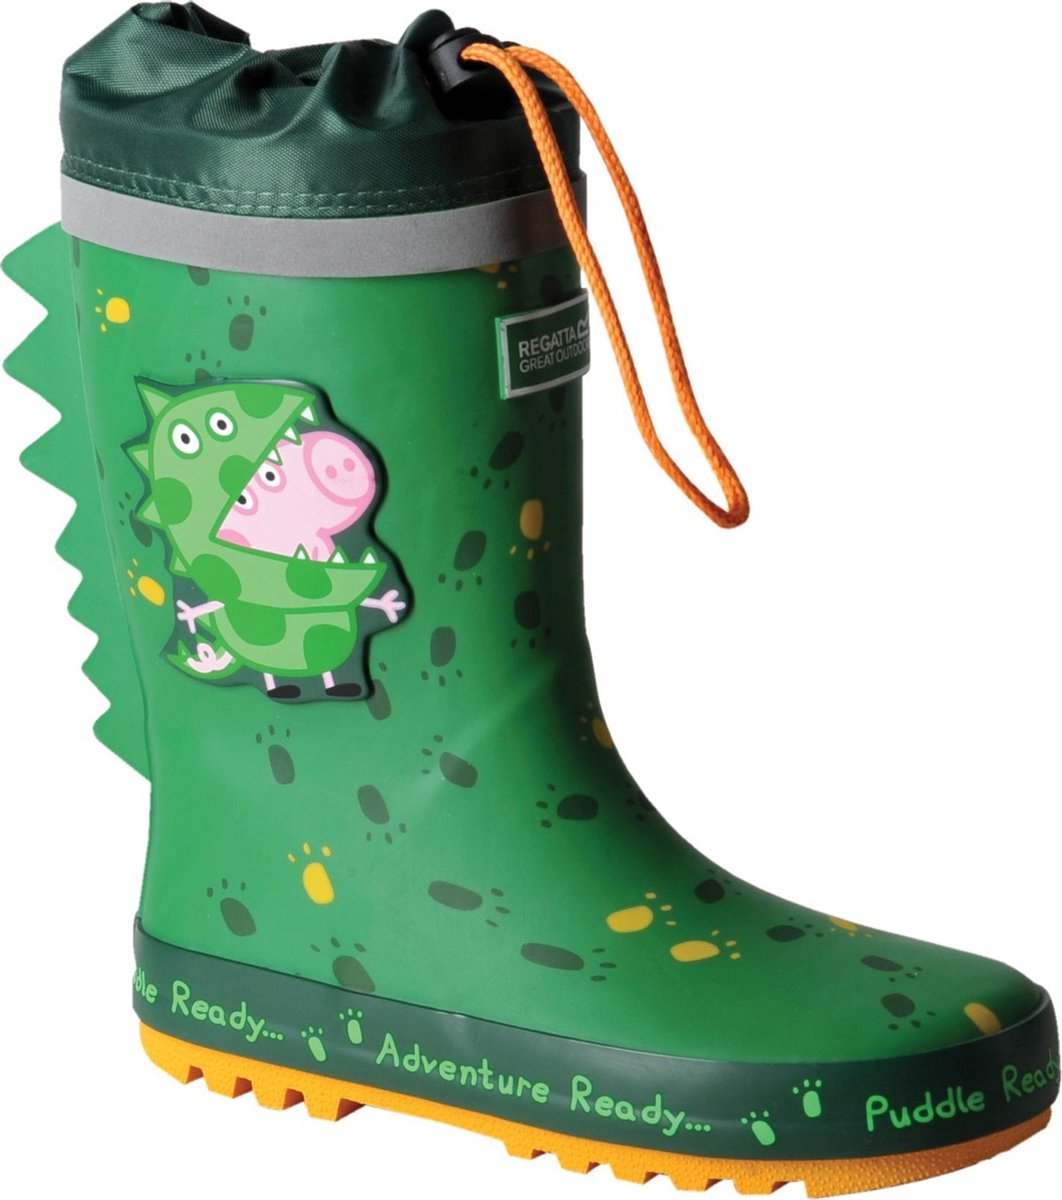 Regatta - Regenlaarzen voor kinderen - Peppa Pig Puddle - Dino groen - maat 29EU